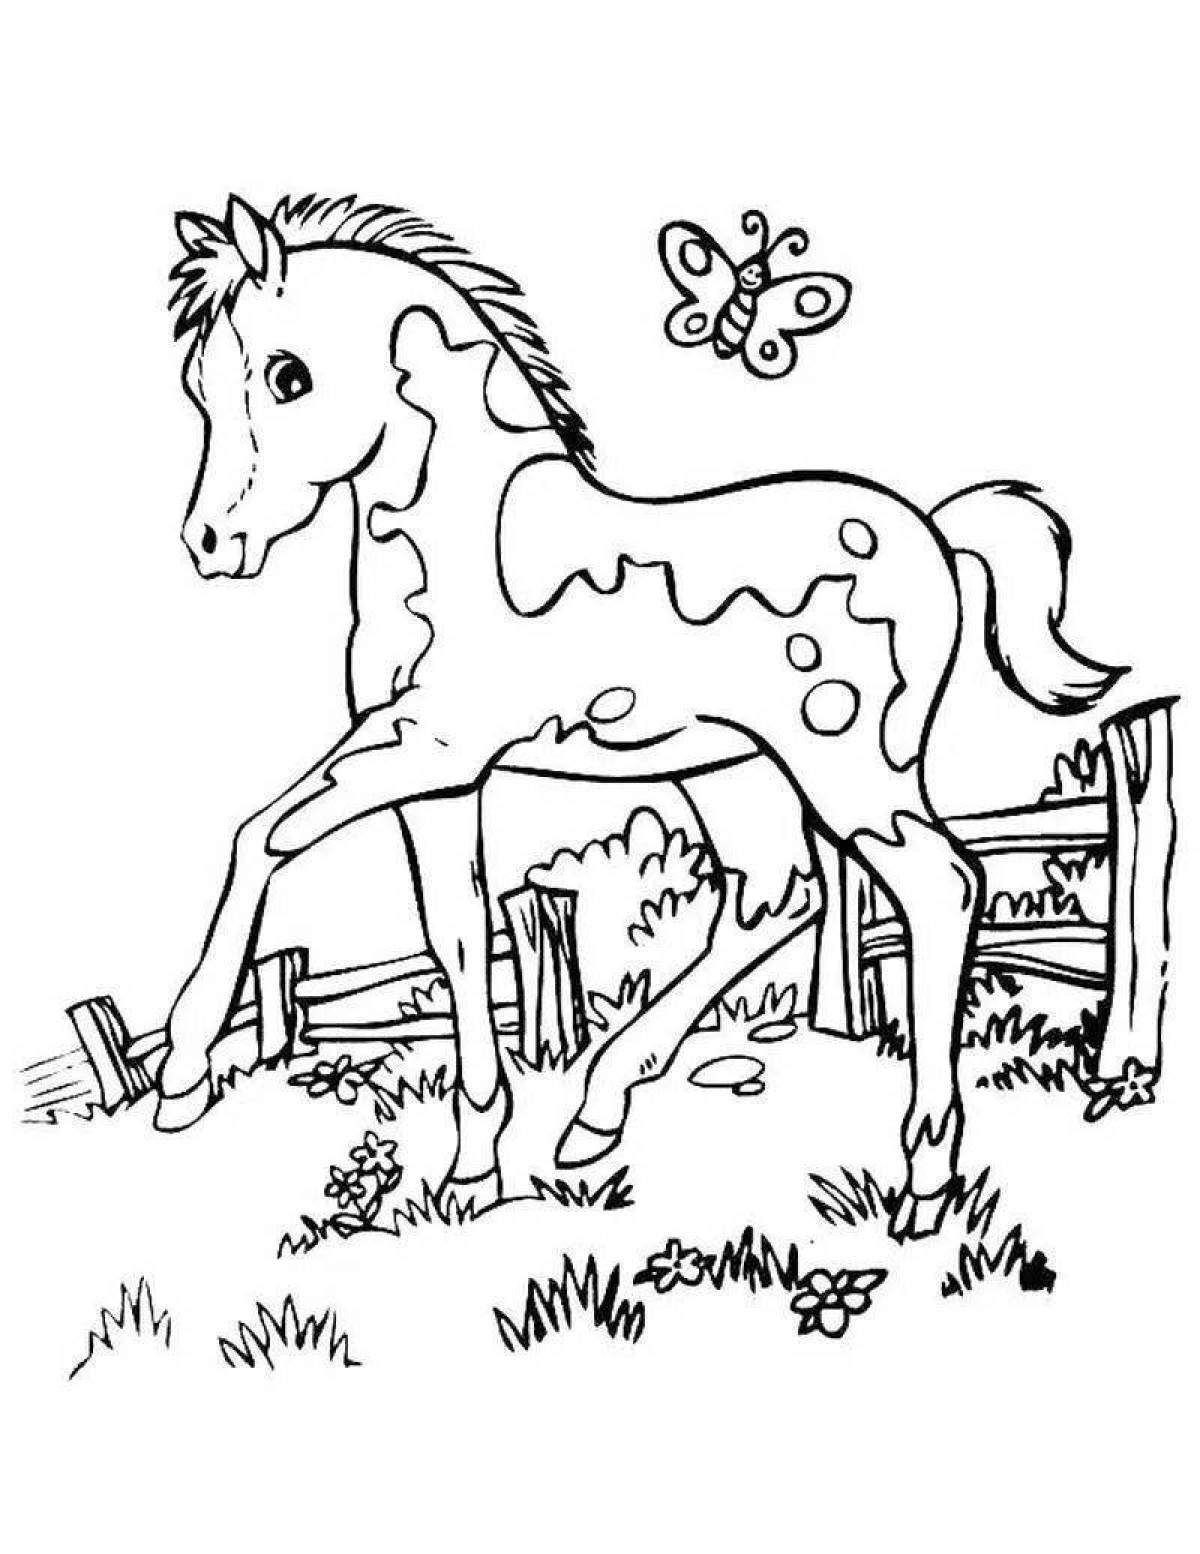 Буйная раскраска лошадь для детей 6-7 лет